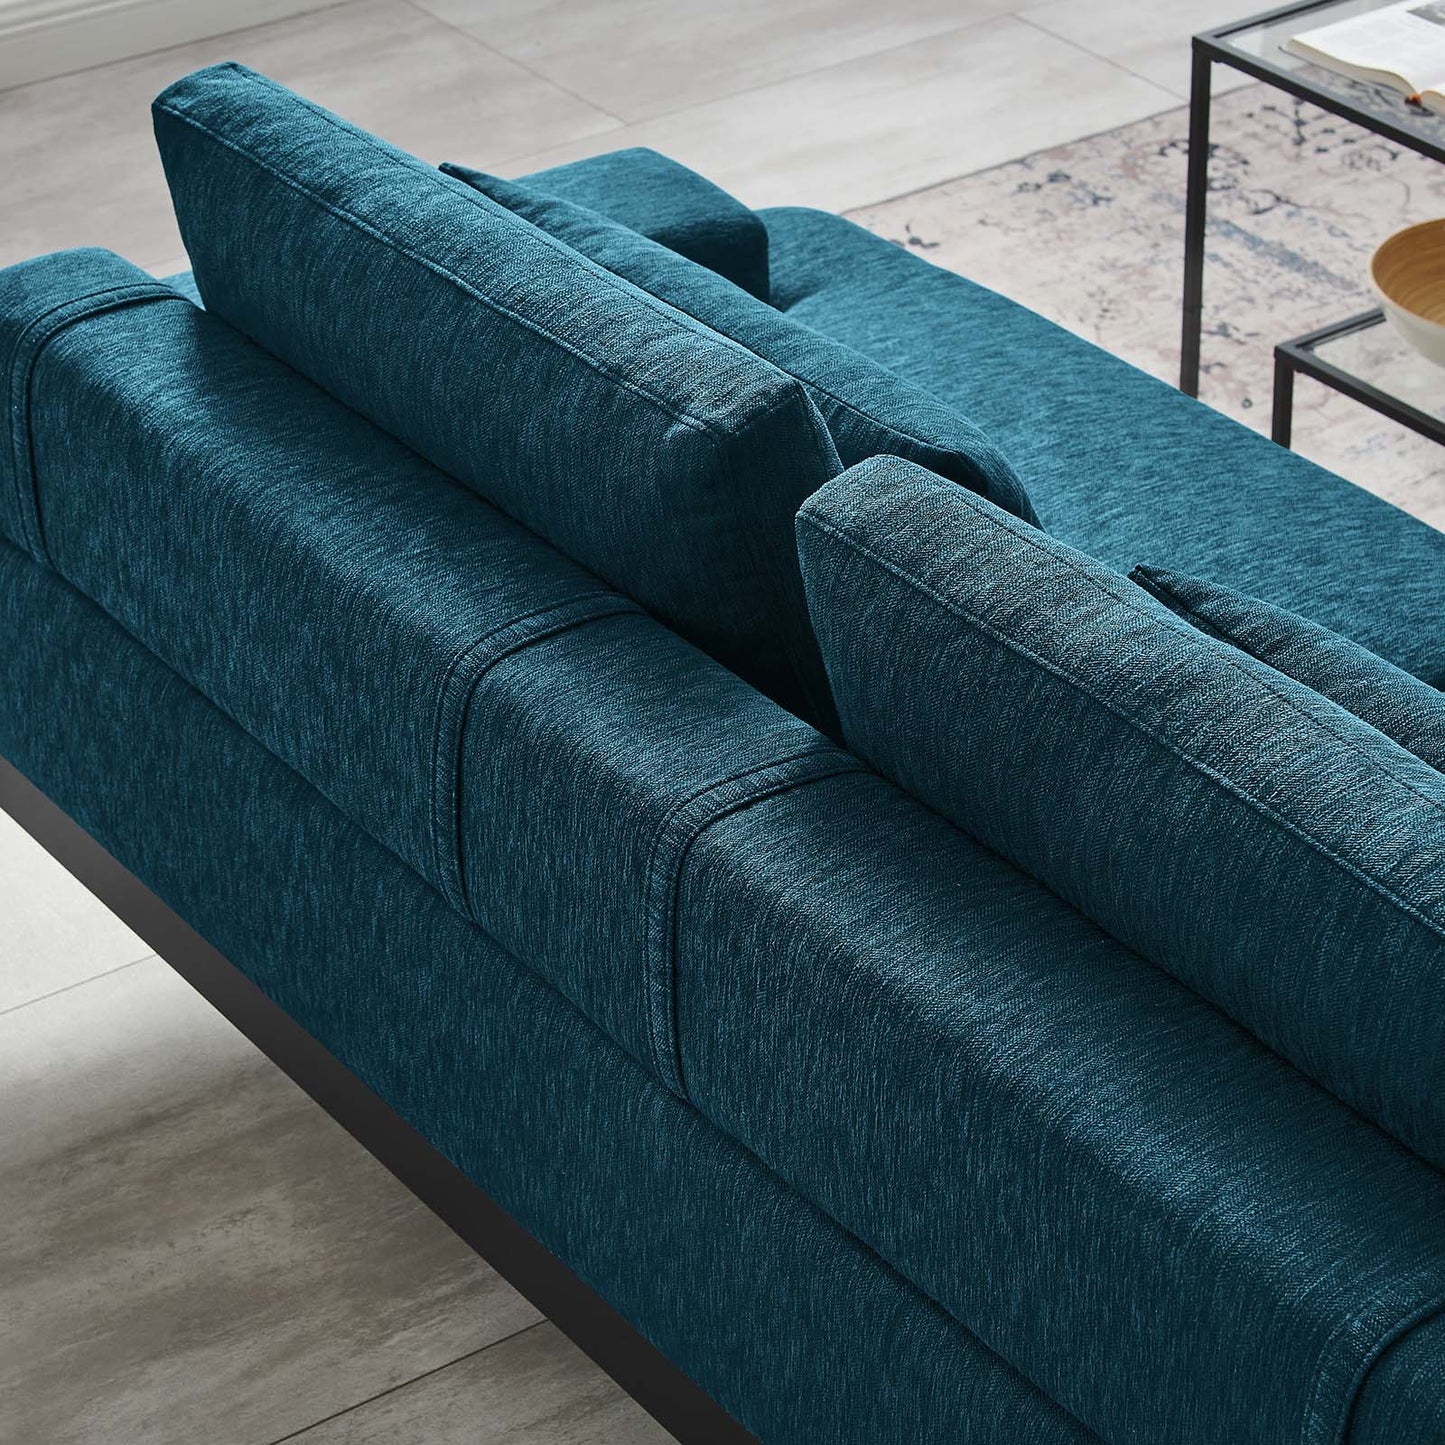 Proximity Upholstered Fabric Sofa Azure EEI-6214-AZU